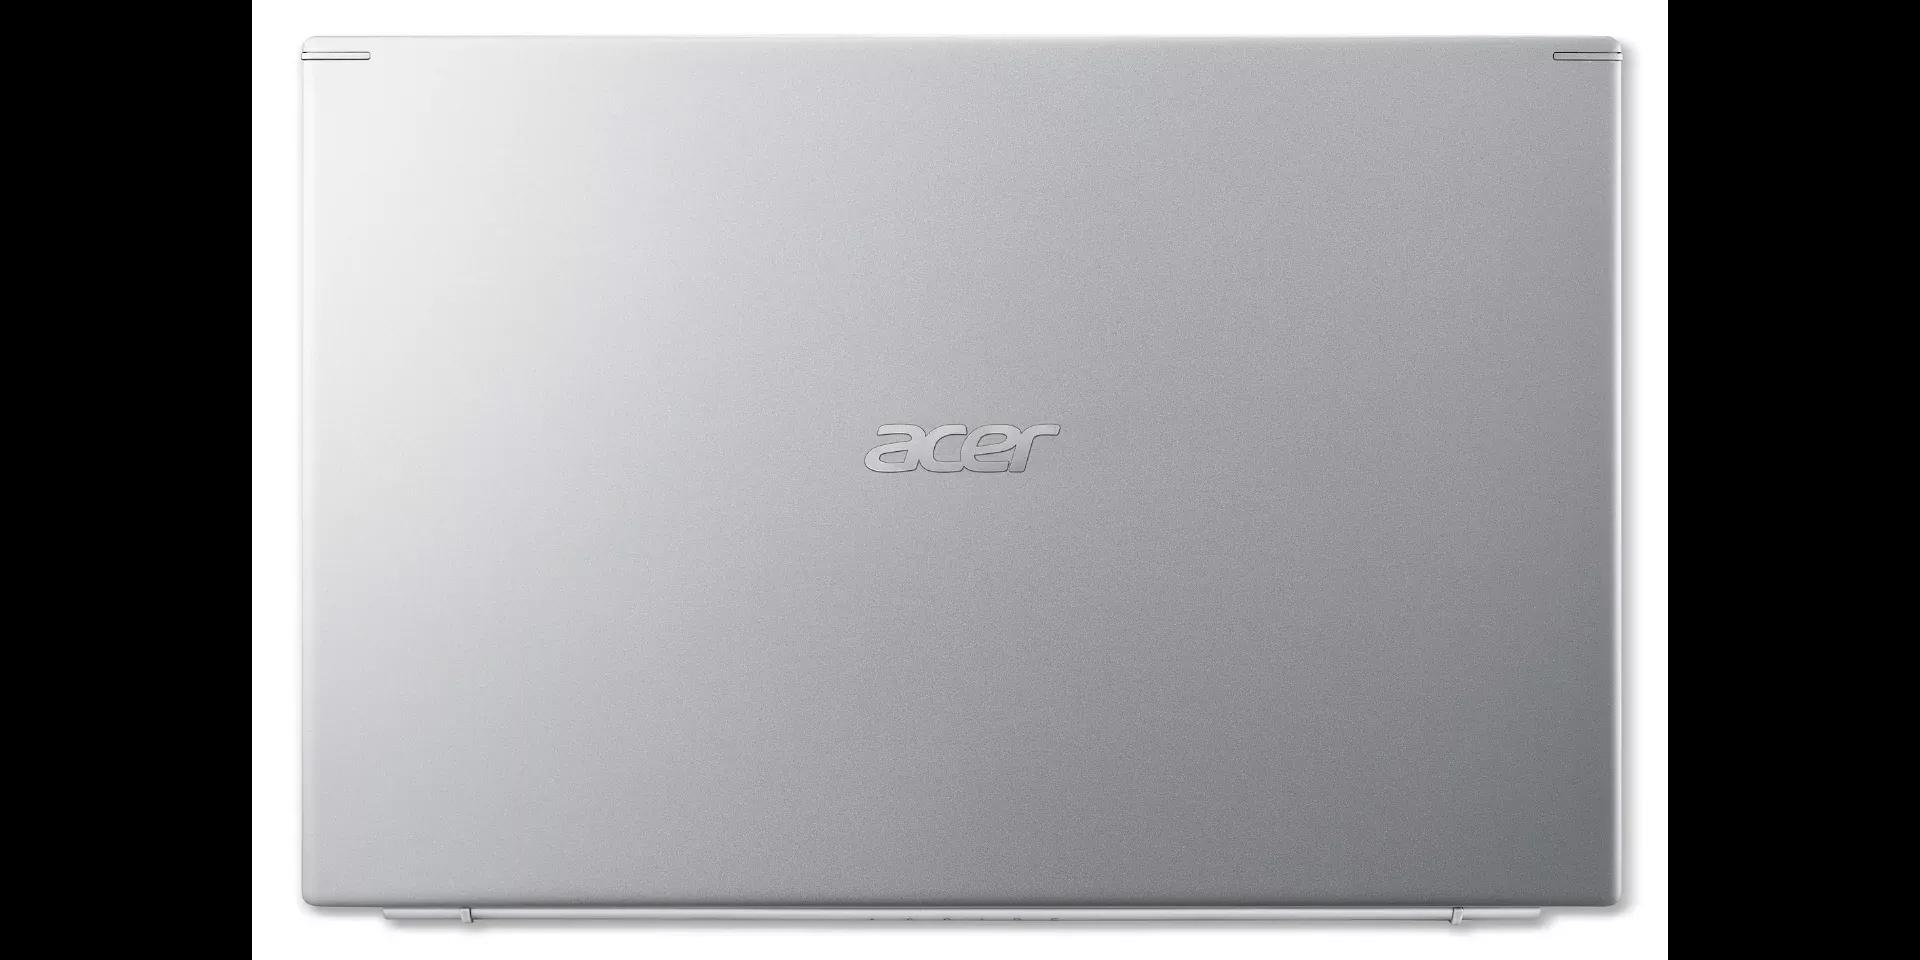 Acer Aspire 5 2021 Ryzen 5 5500U / 8GB RAM / 256GB SSD / 15.6" FHD Display